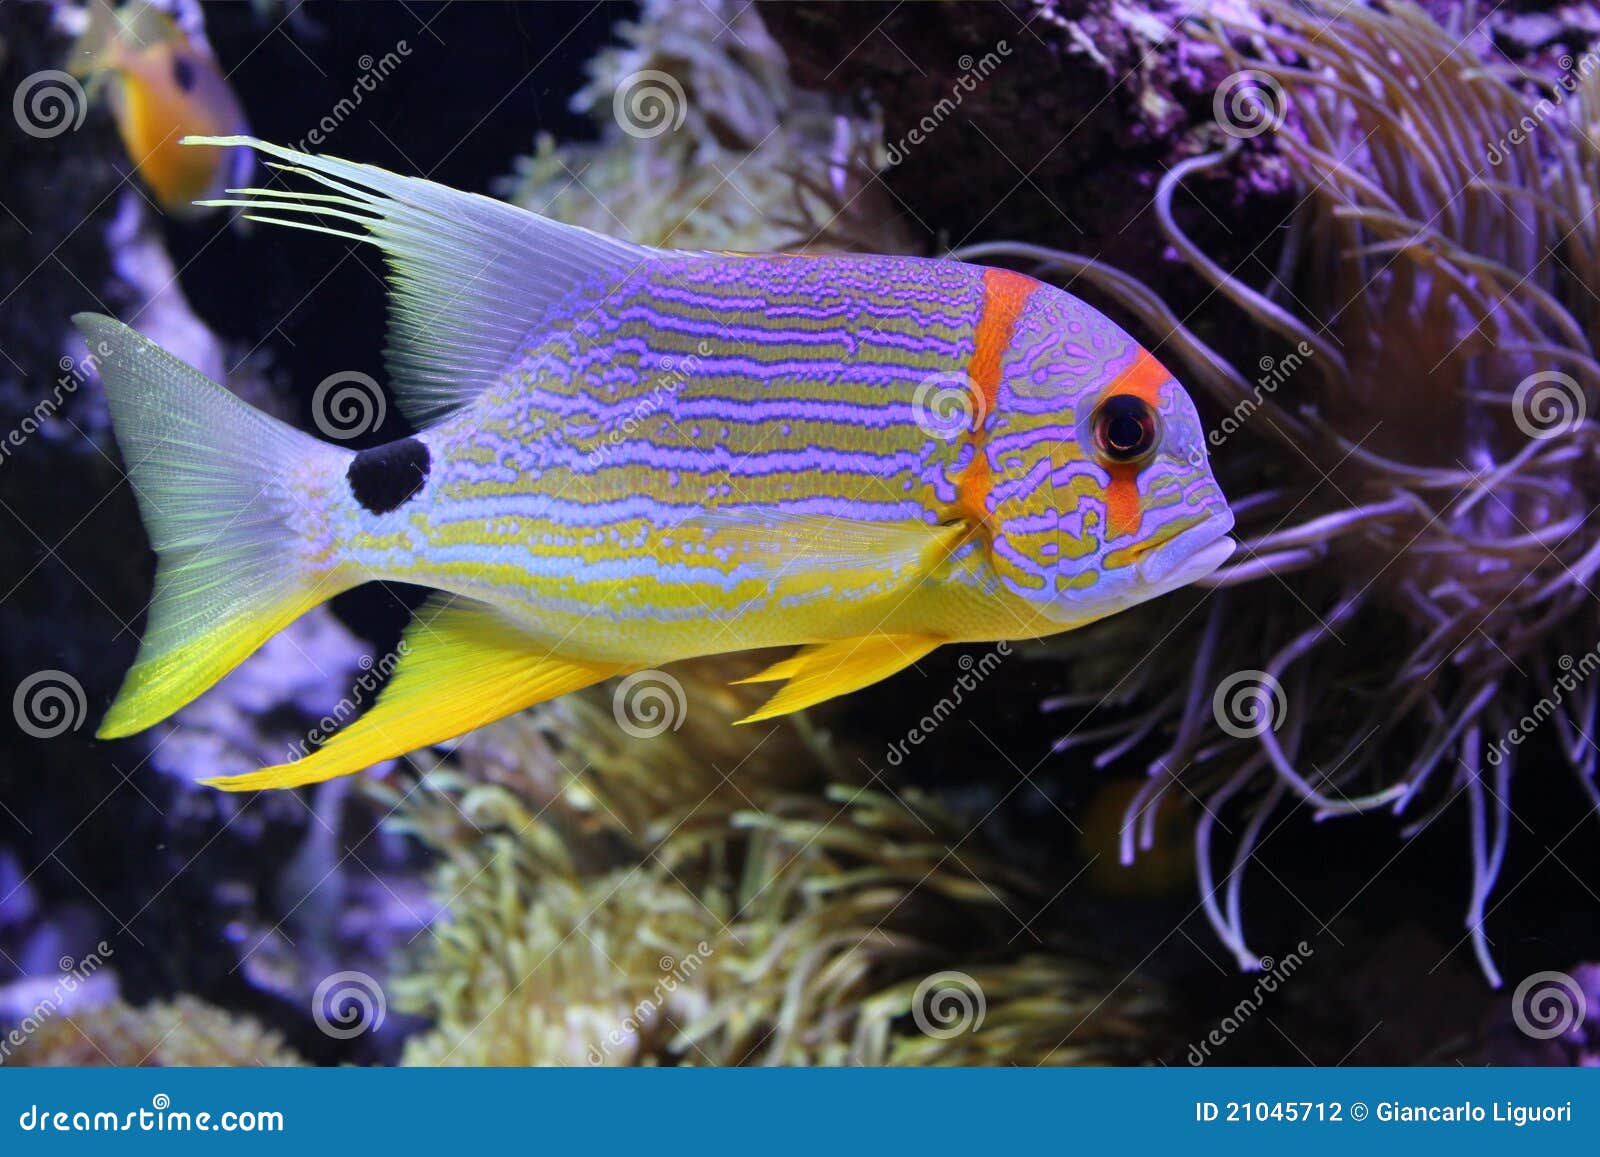 Beautiful Fish Under the Sea Stock Photo - Image of aquarium ...